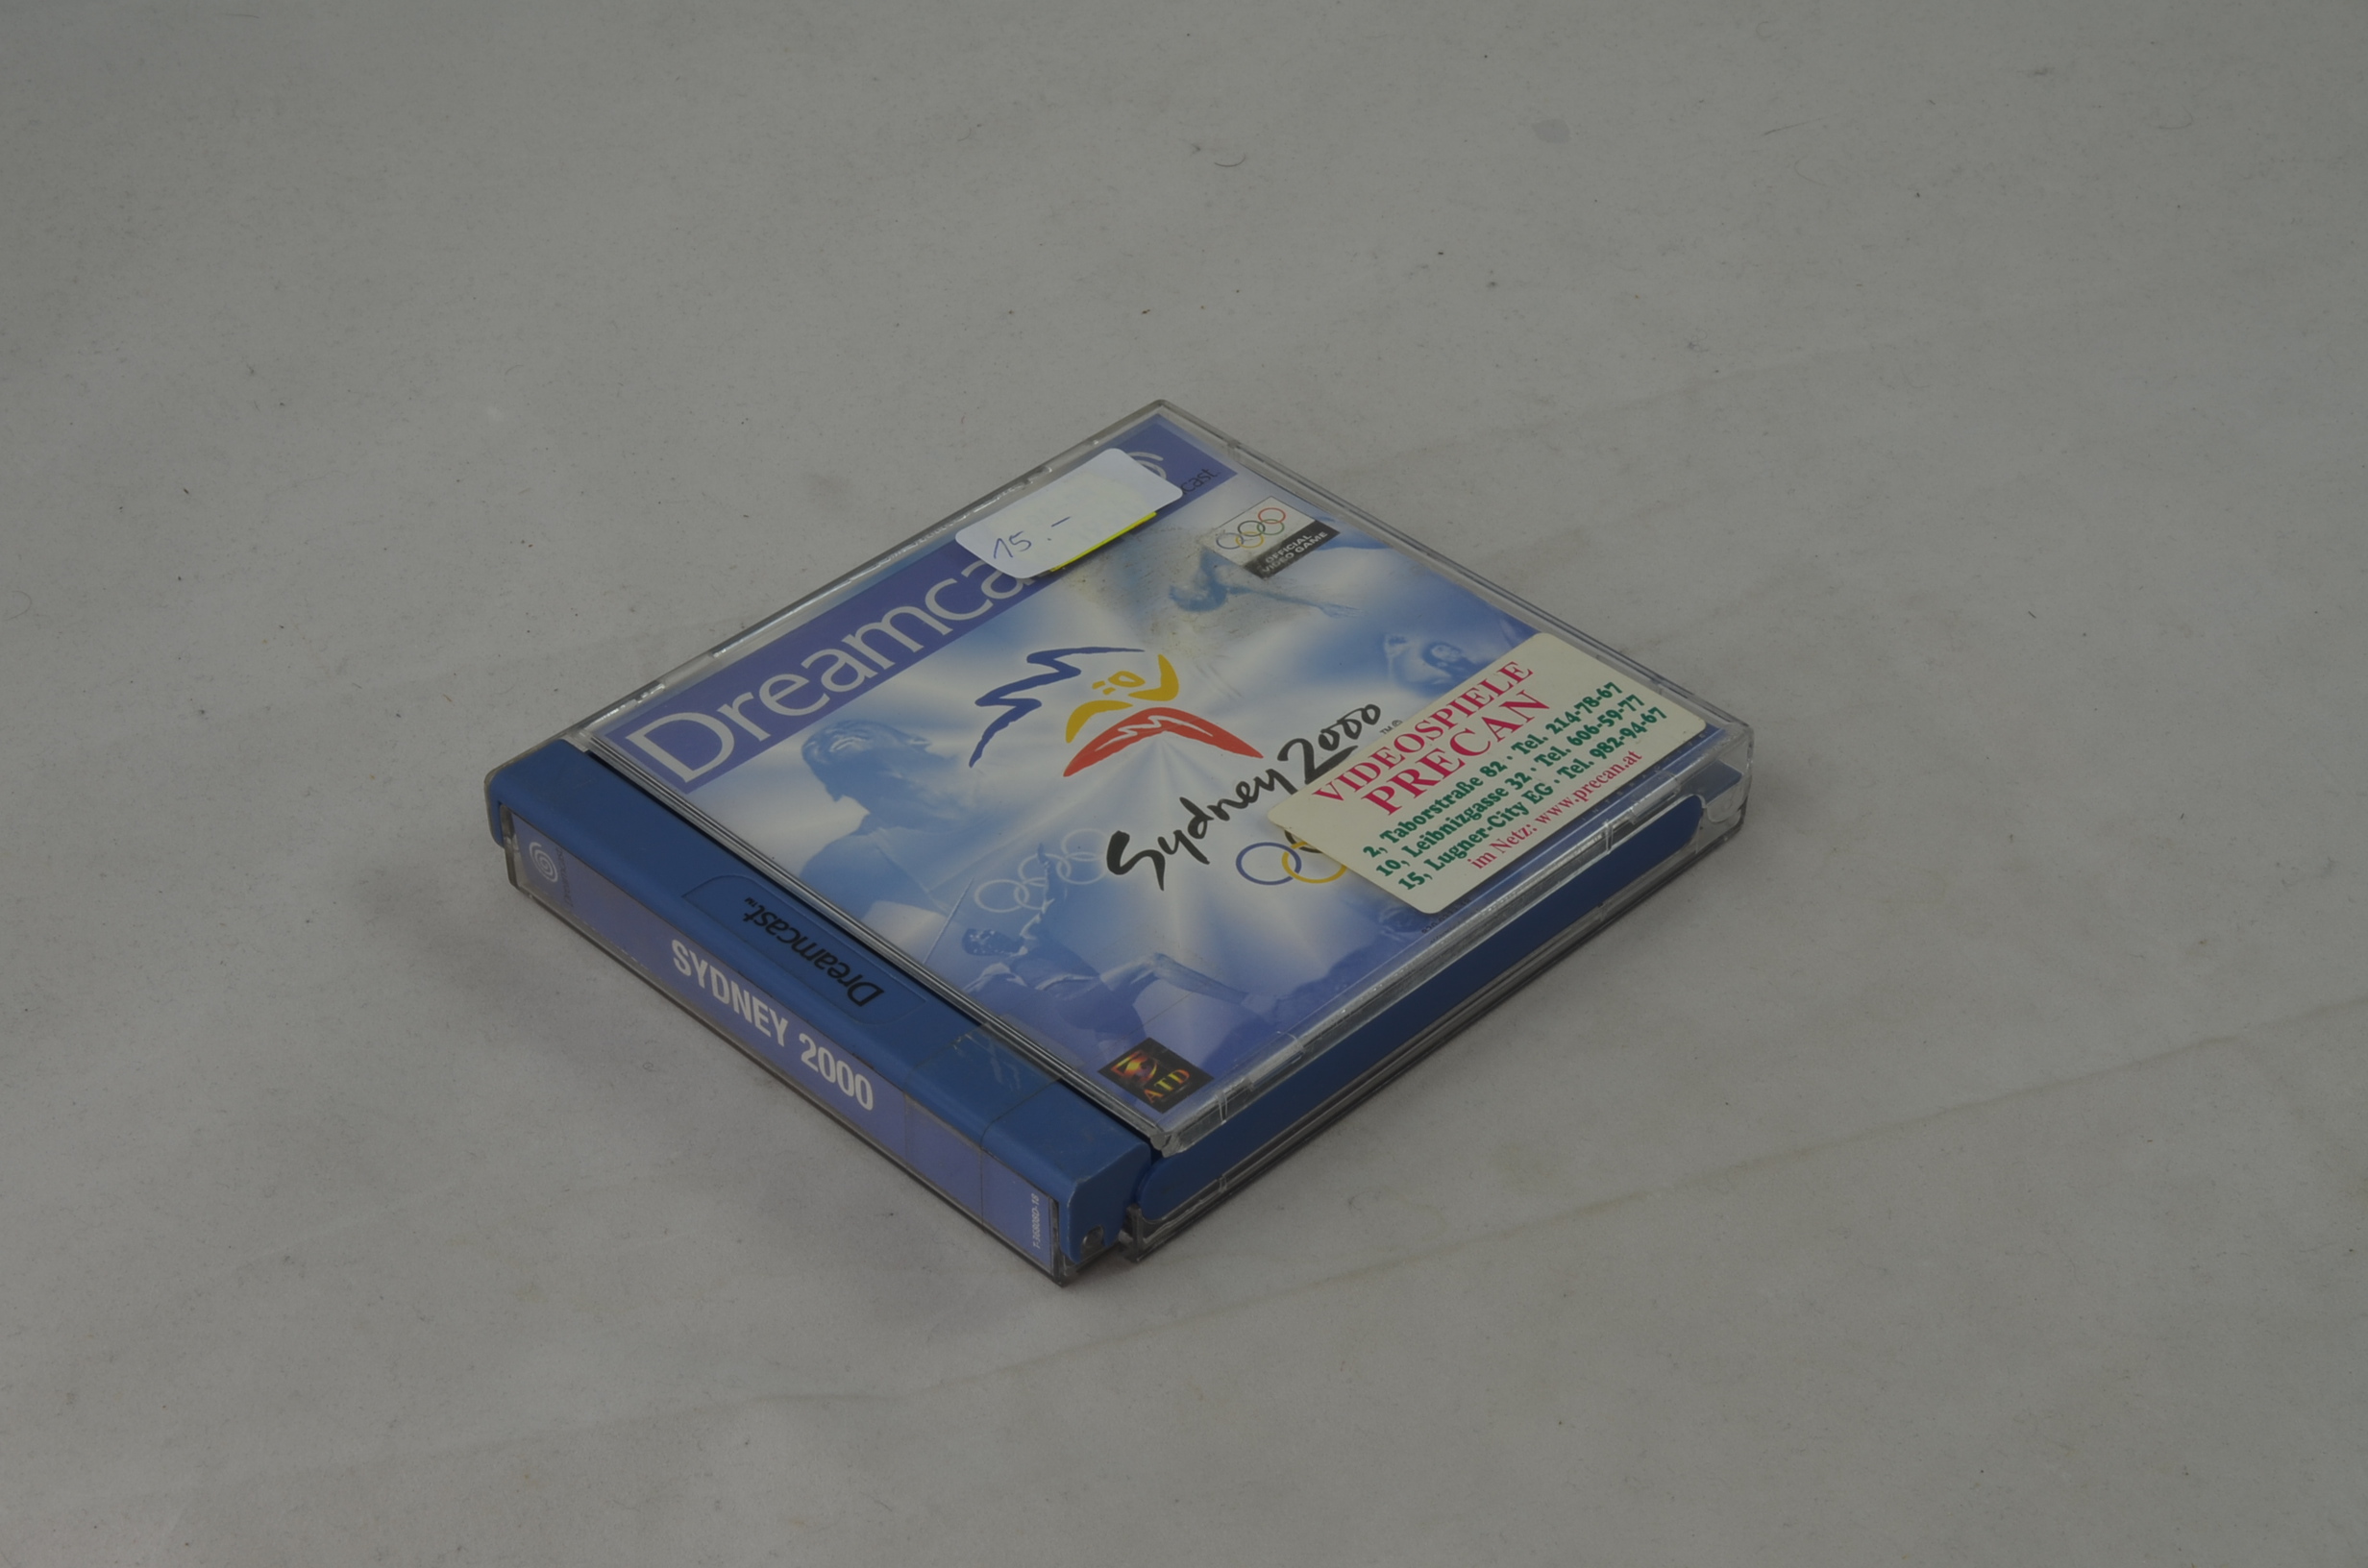 Produktbild von Sydney 2000 Dreamcast Spiel CIB